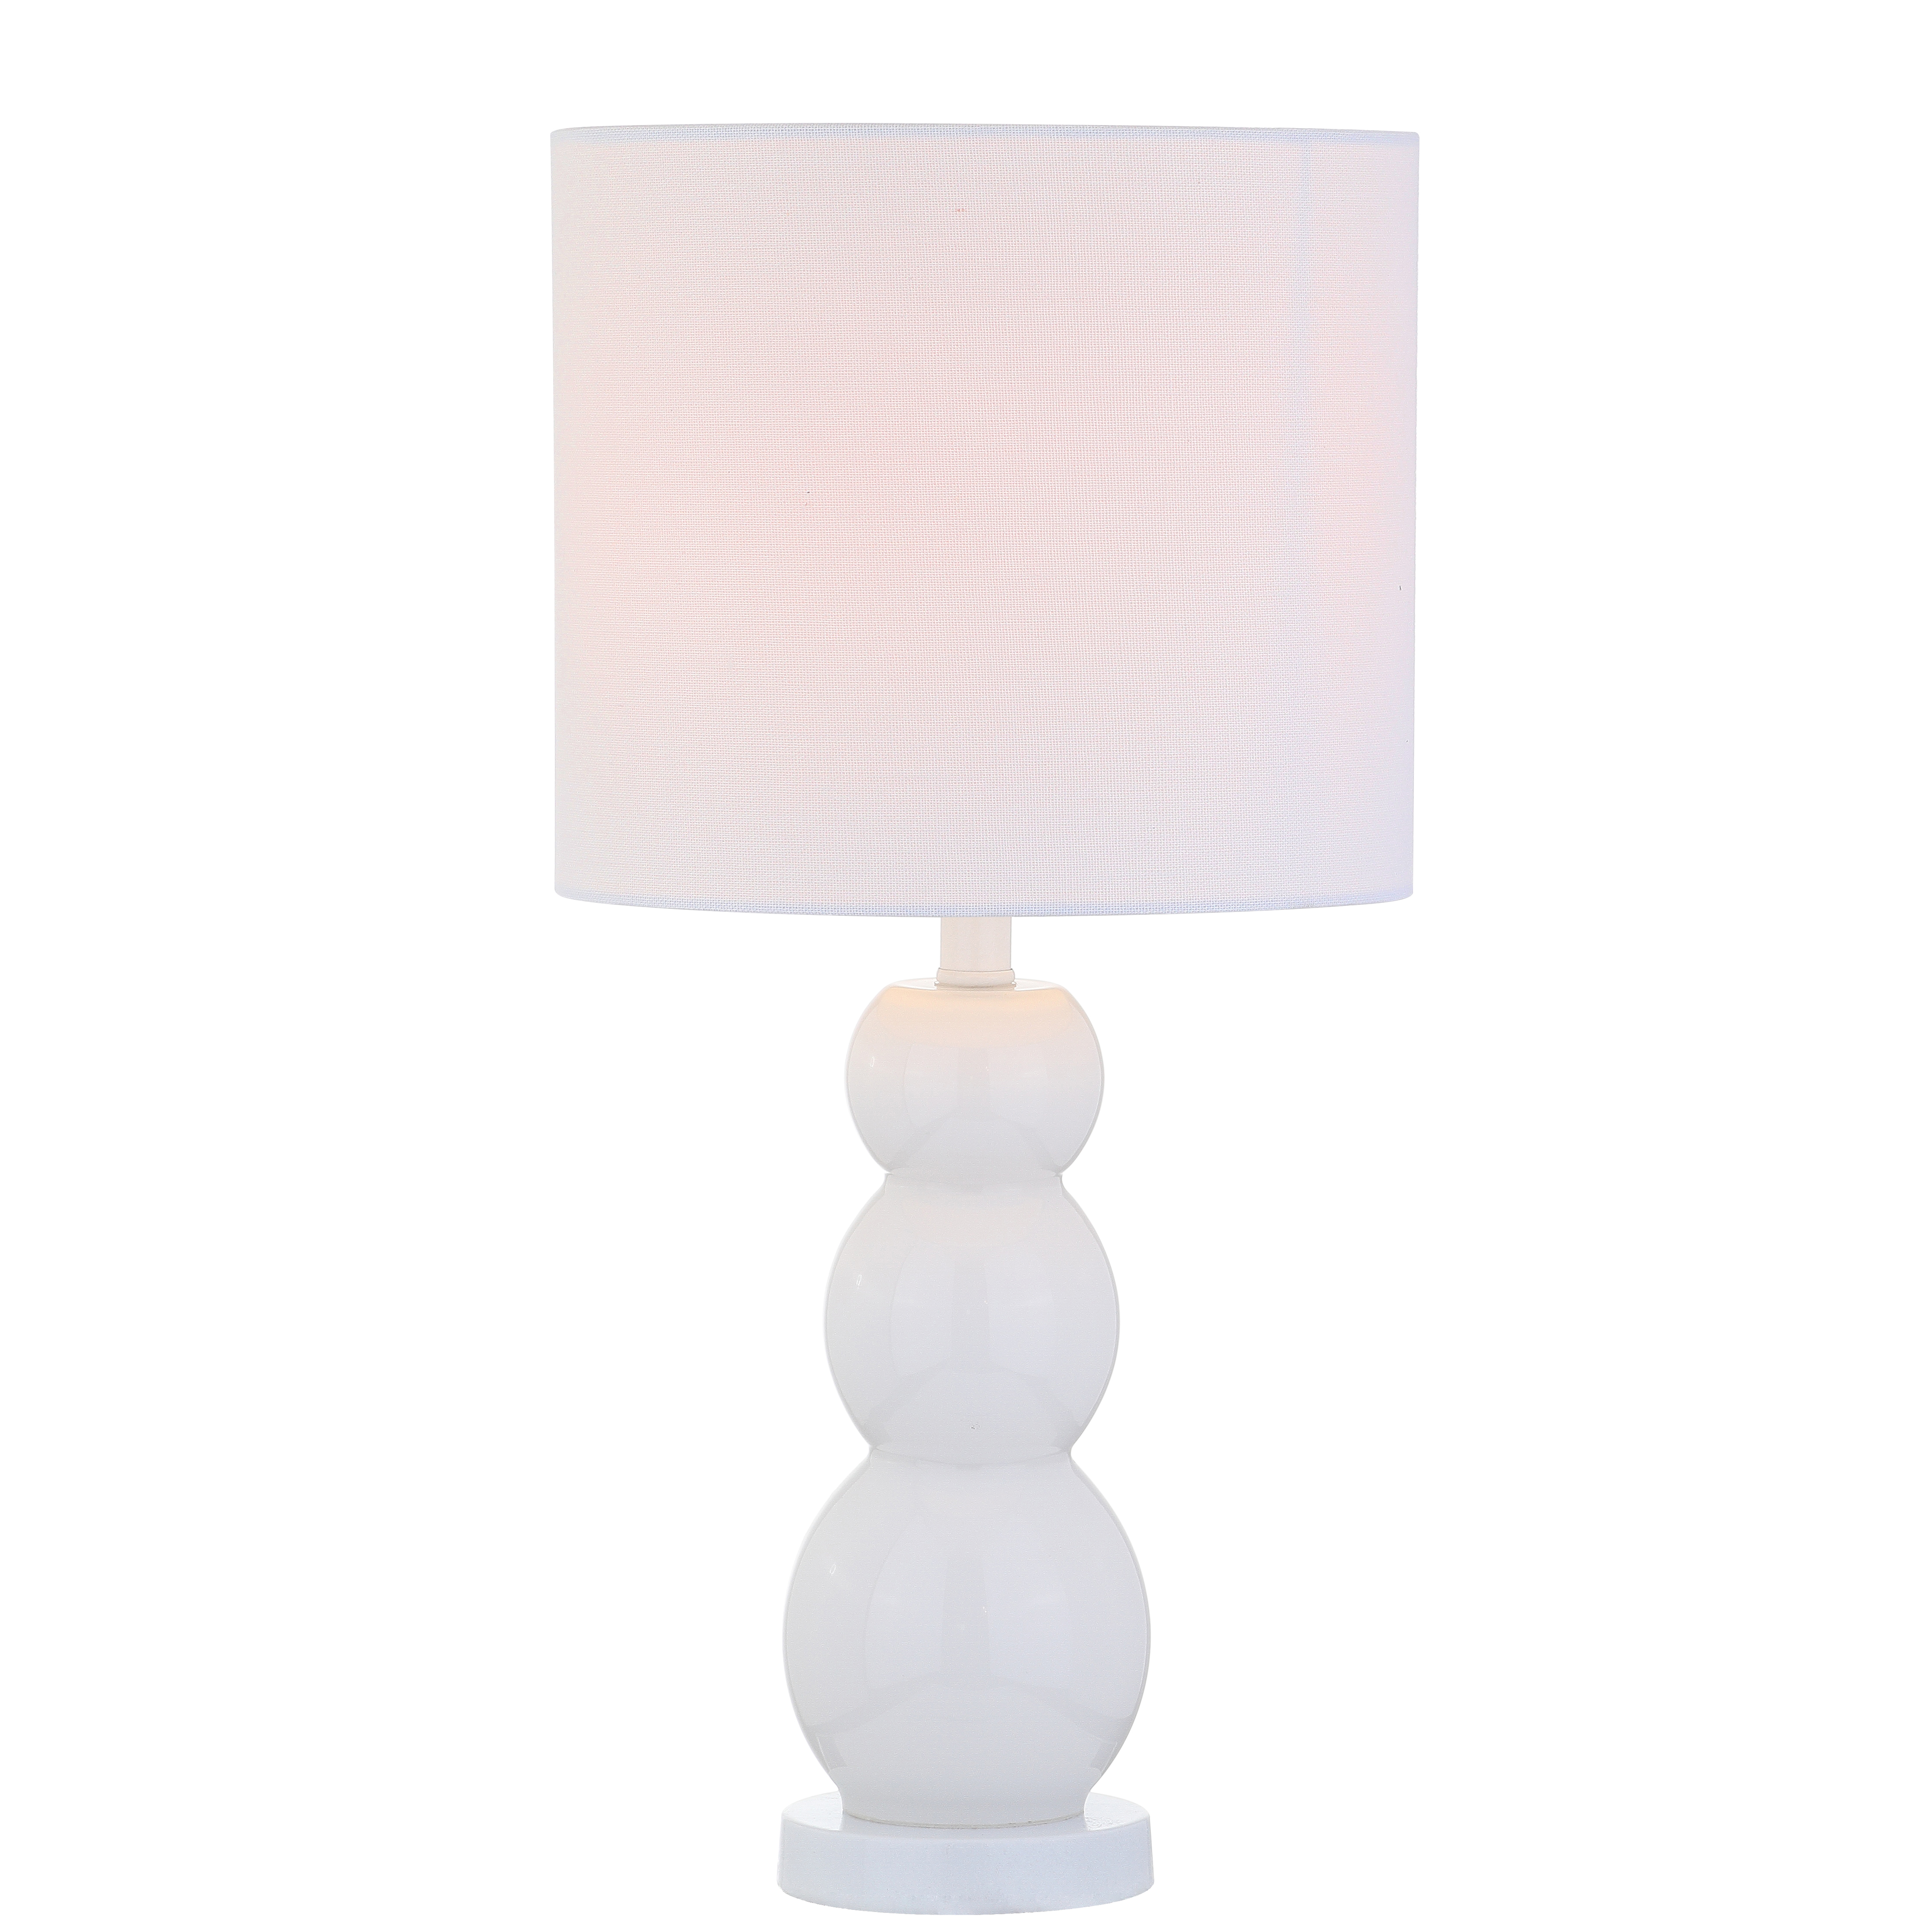 Cabra Table Lamp - White - Arlo Home - Arlo Home